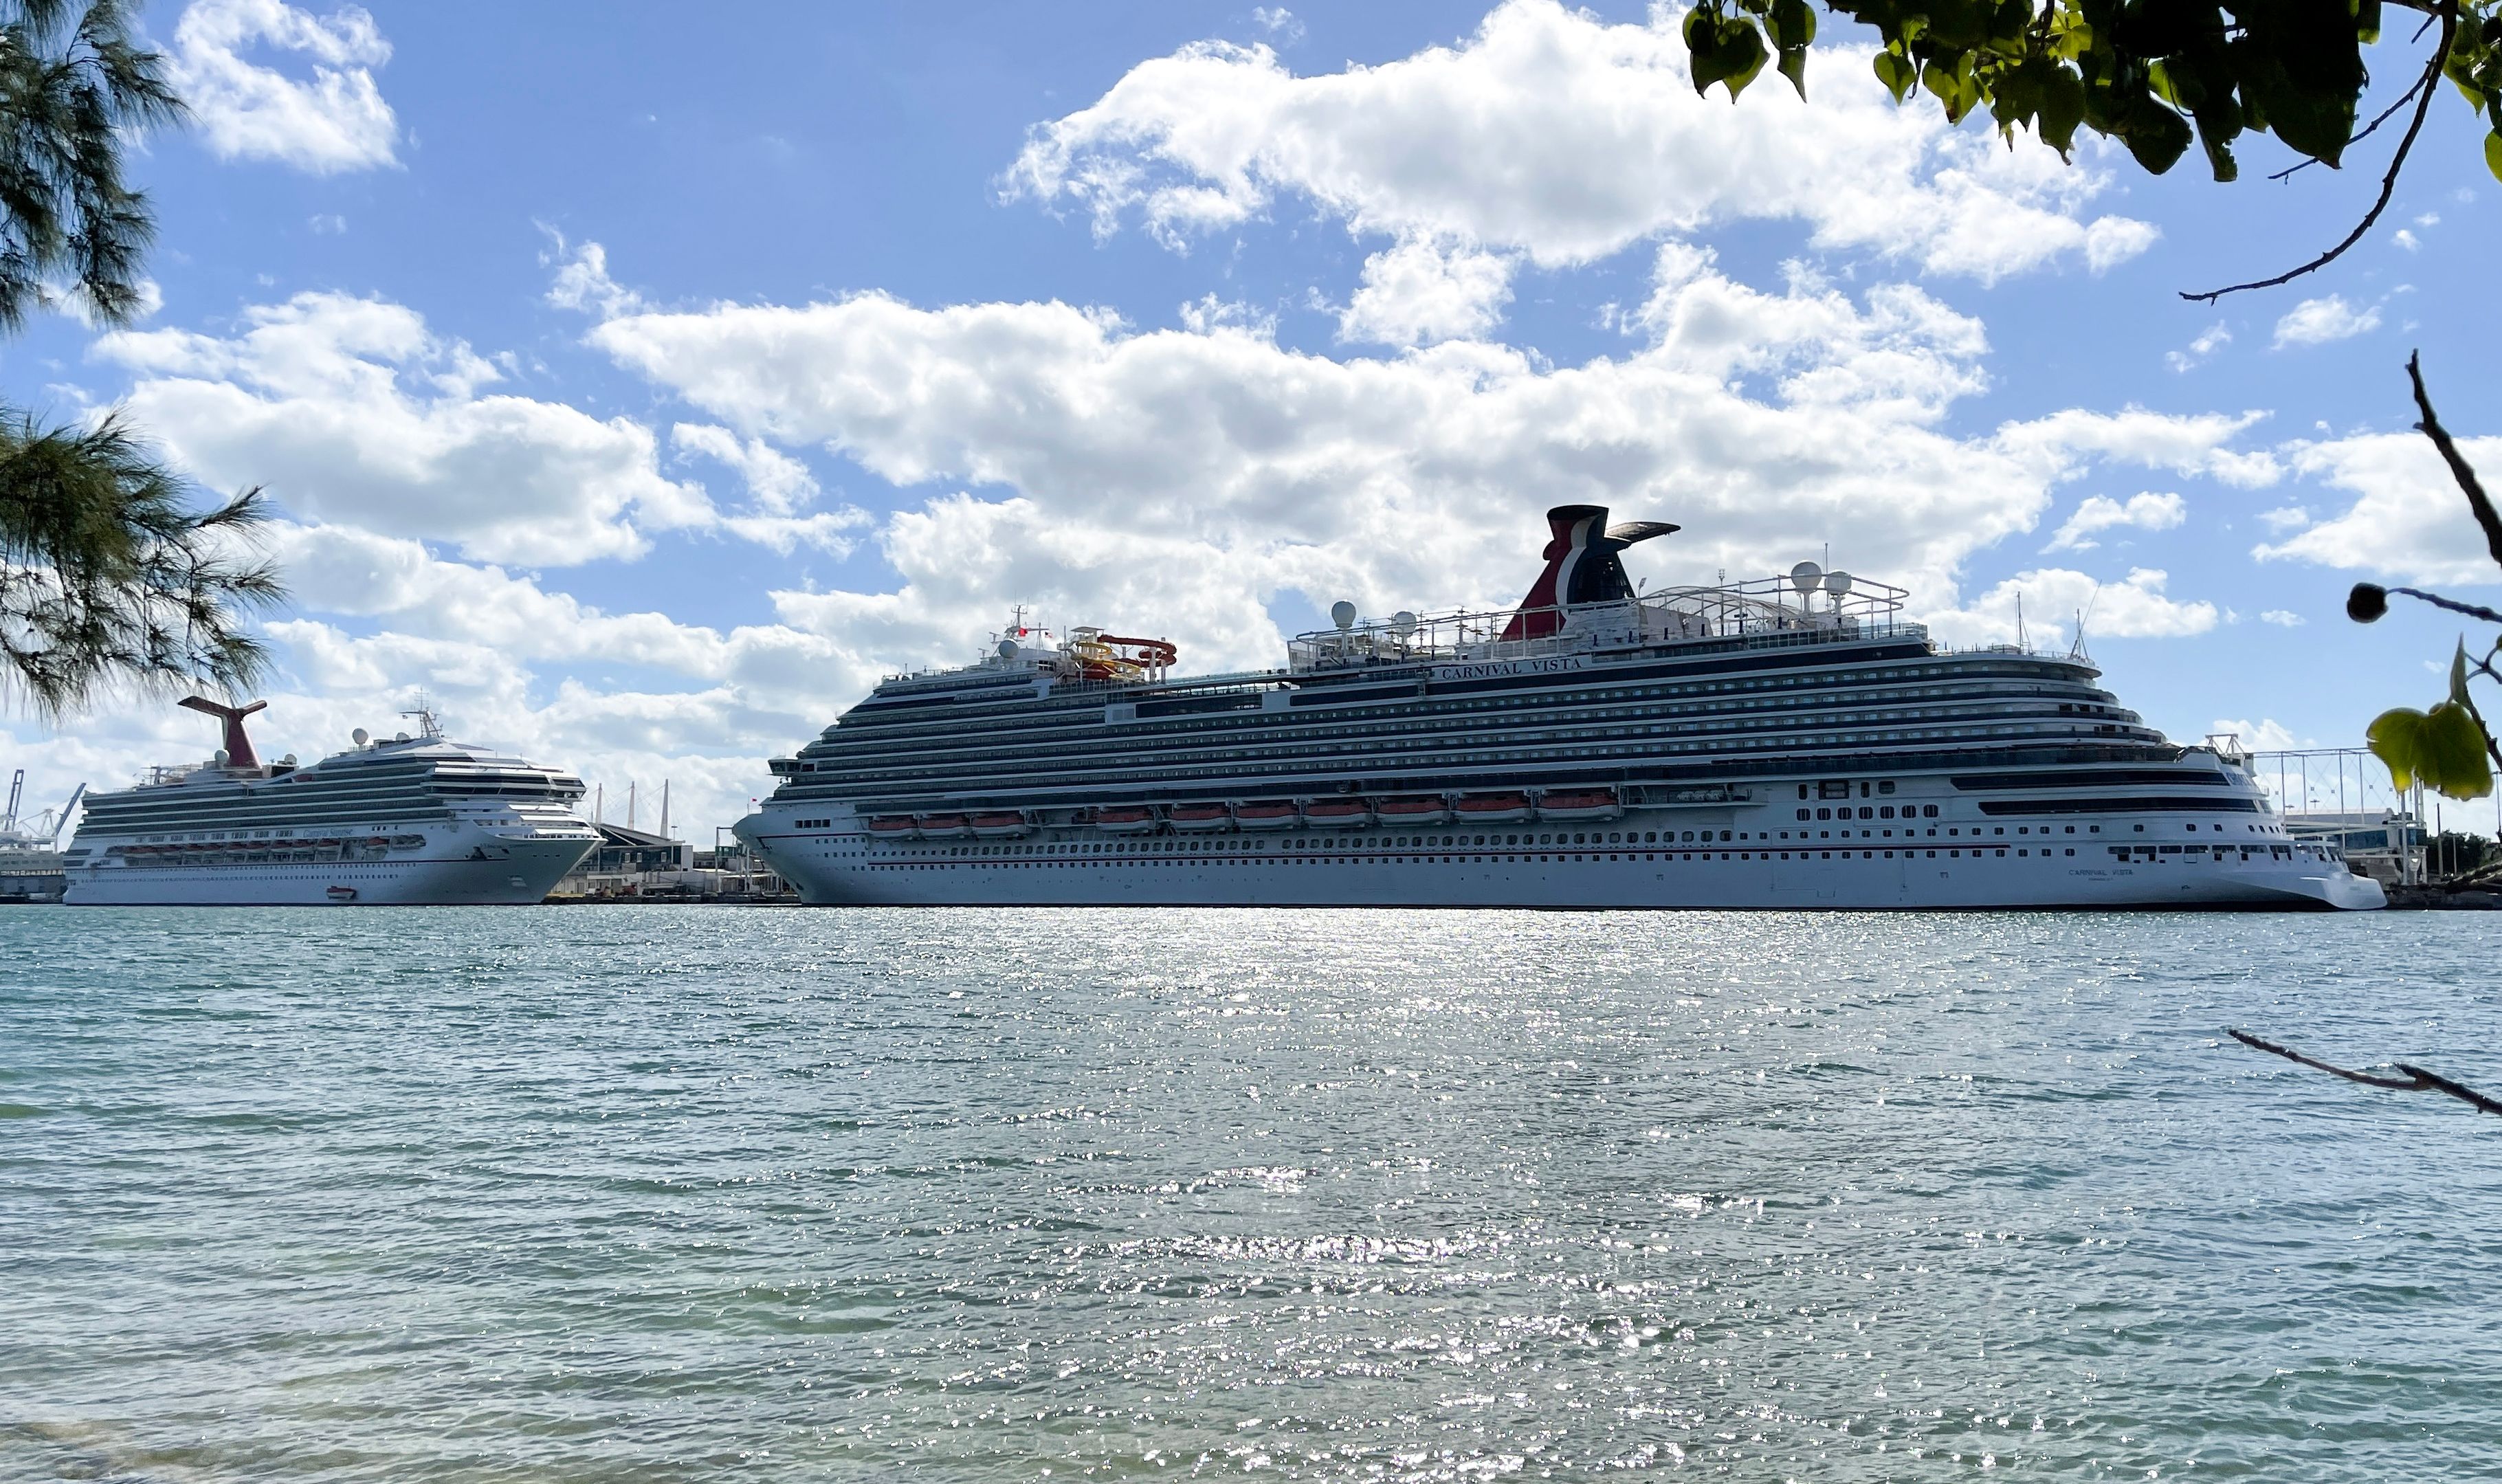 Carnival sieht geschäftigste Buchungswoche aller Zeiten, nachdem CDC Cruise Advisory zurückgezogen hat